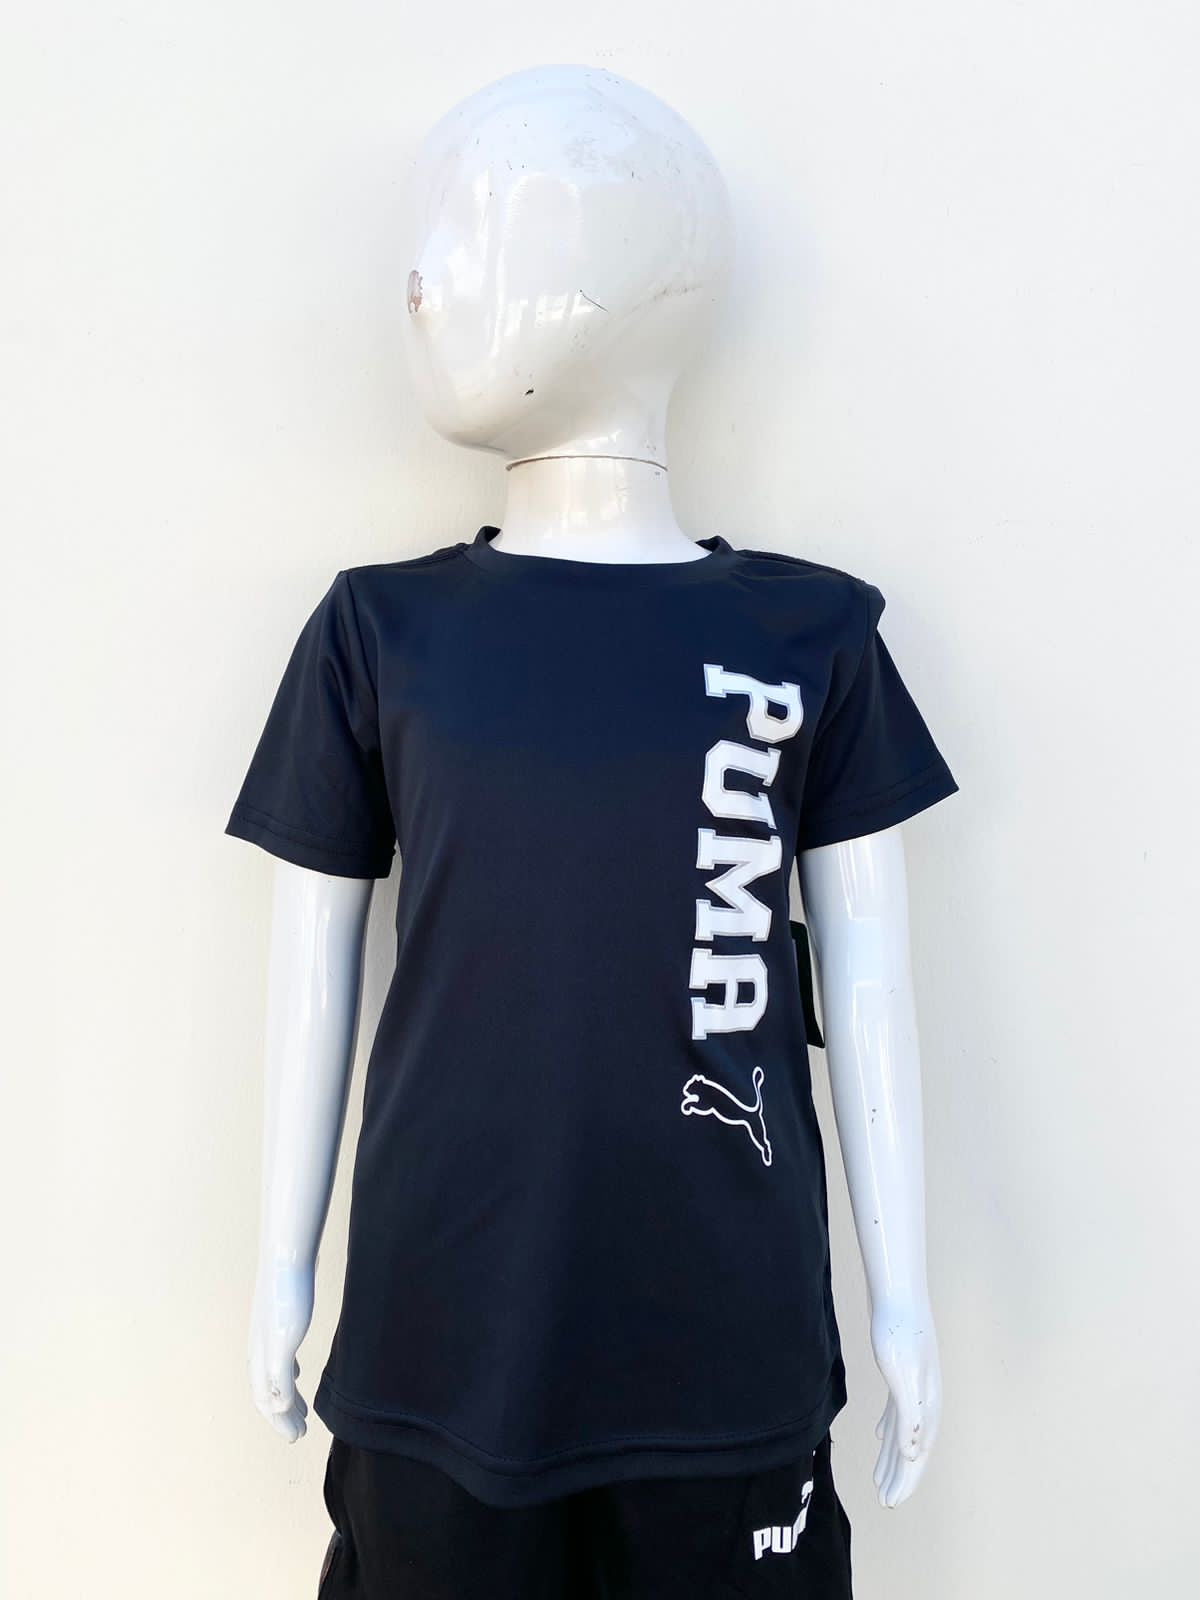 T-shirt Puma original negro con letras PUMA en blanco.